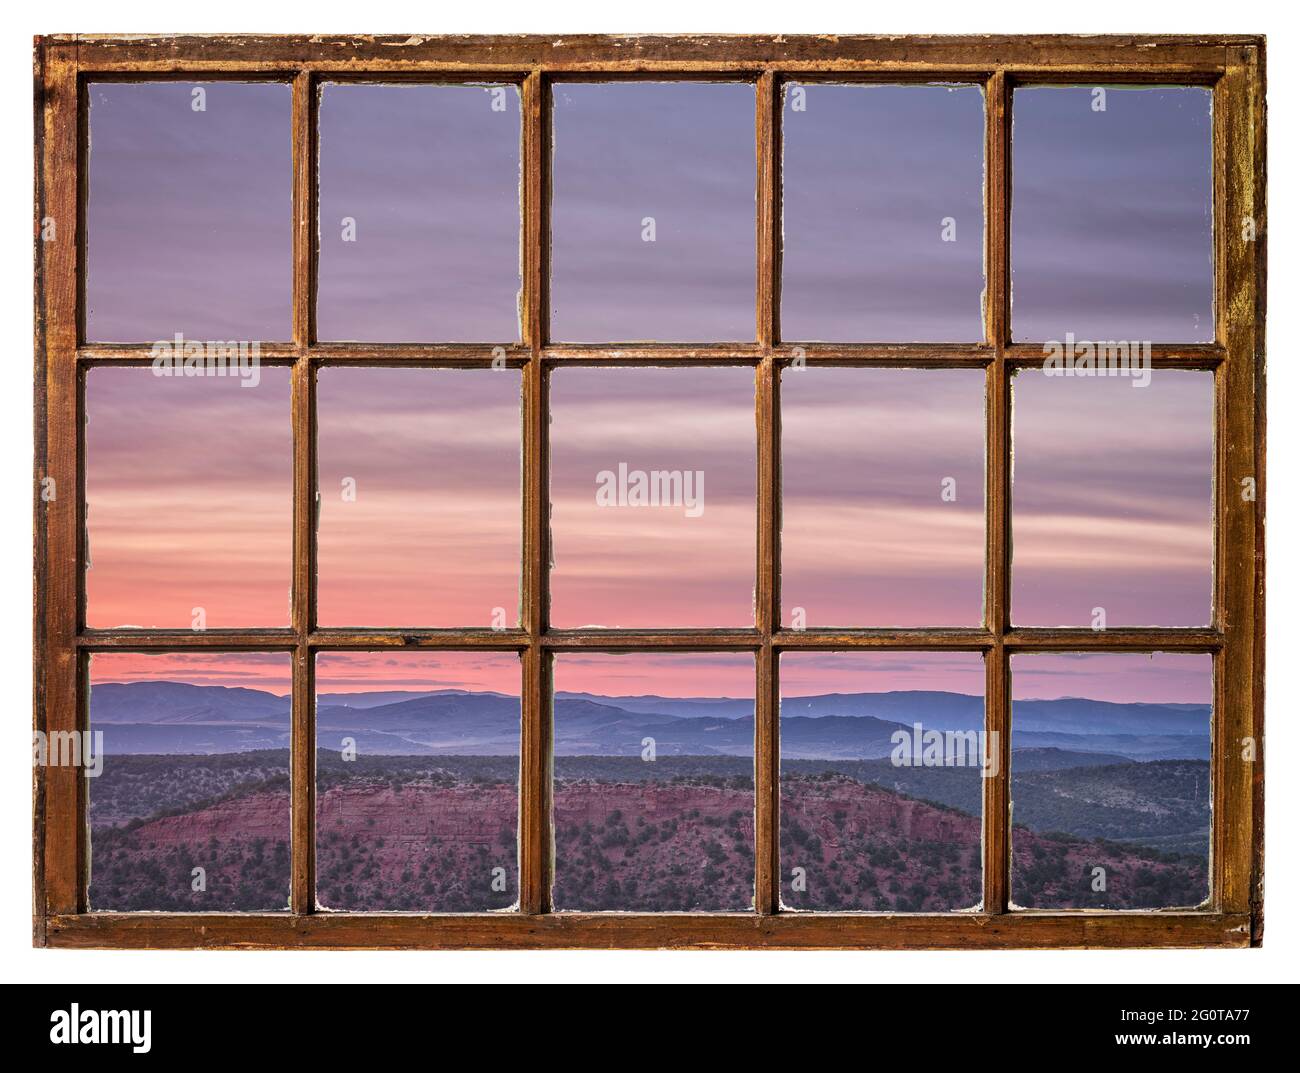 Farbenprächtiger Himmel bei Sonnenaufgang im Nordwesten Colorados, von einem alten Kabinenfenster aus gesehen Stockfoto